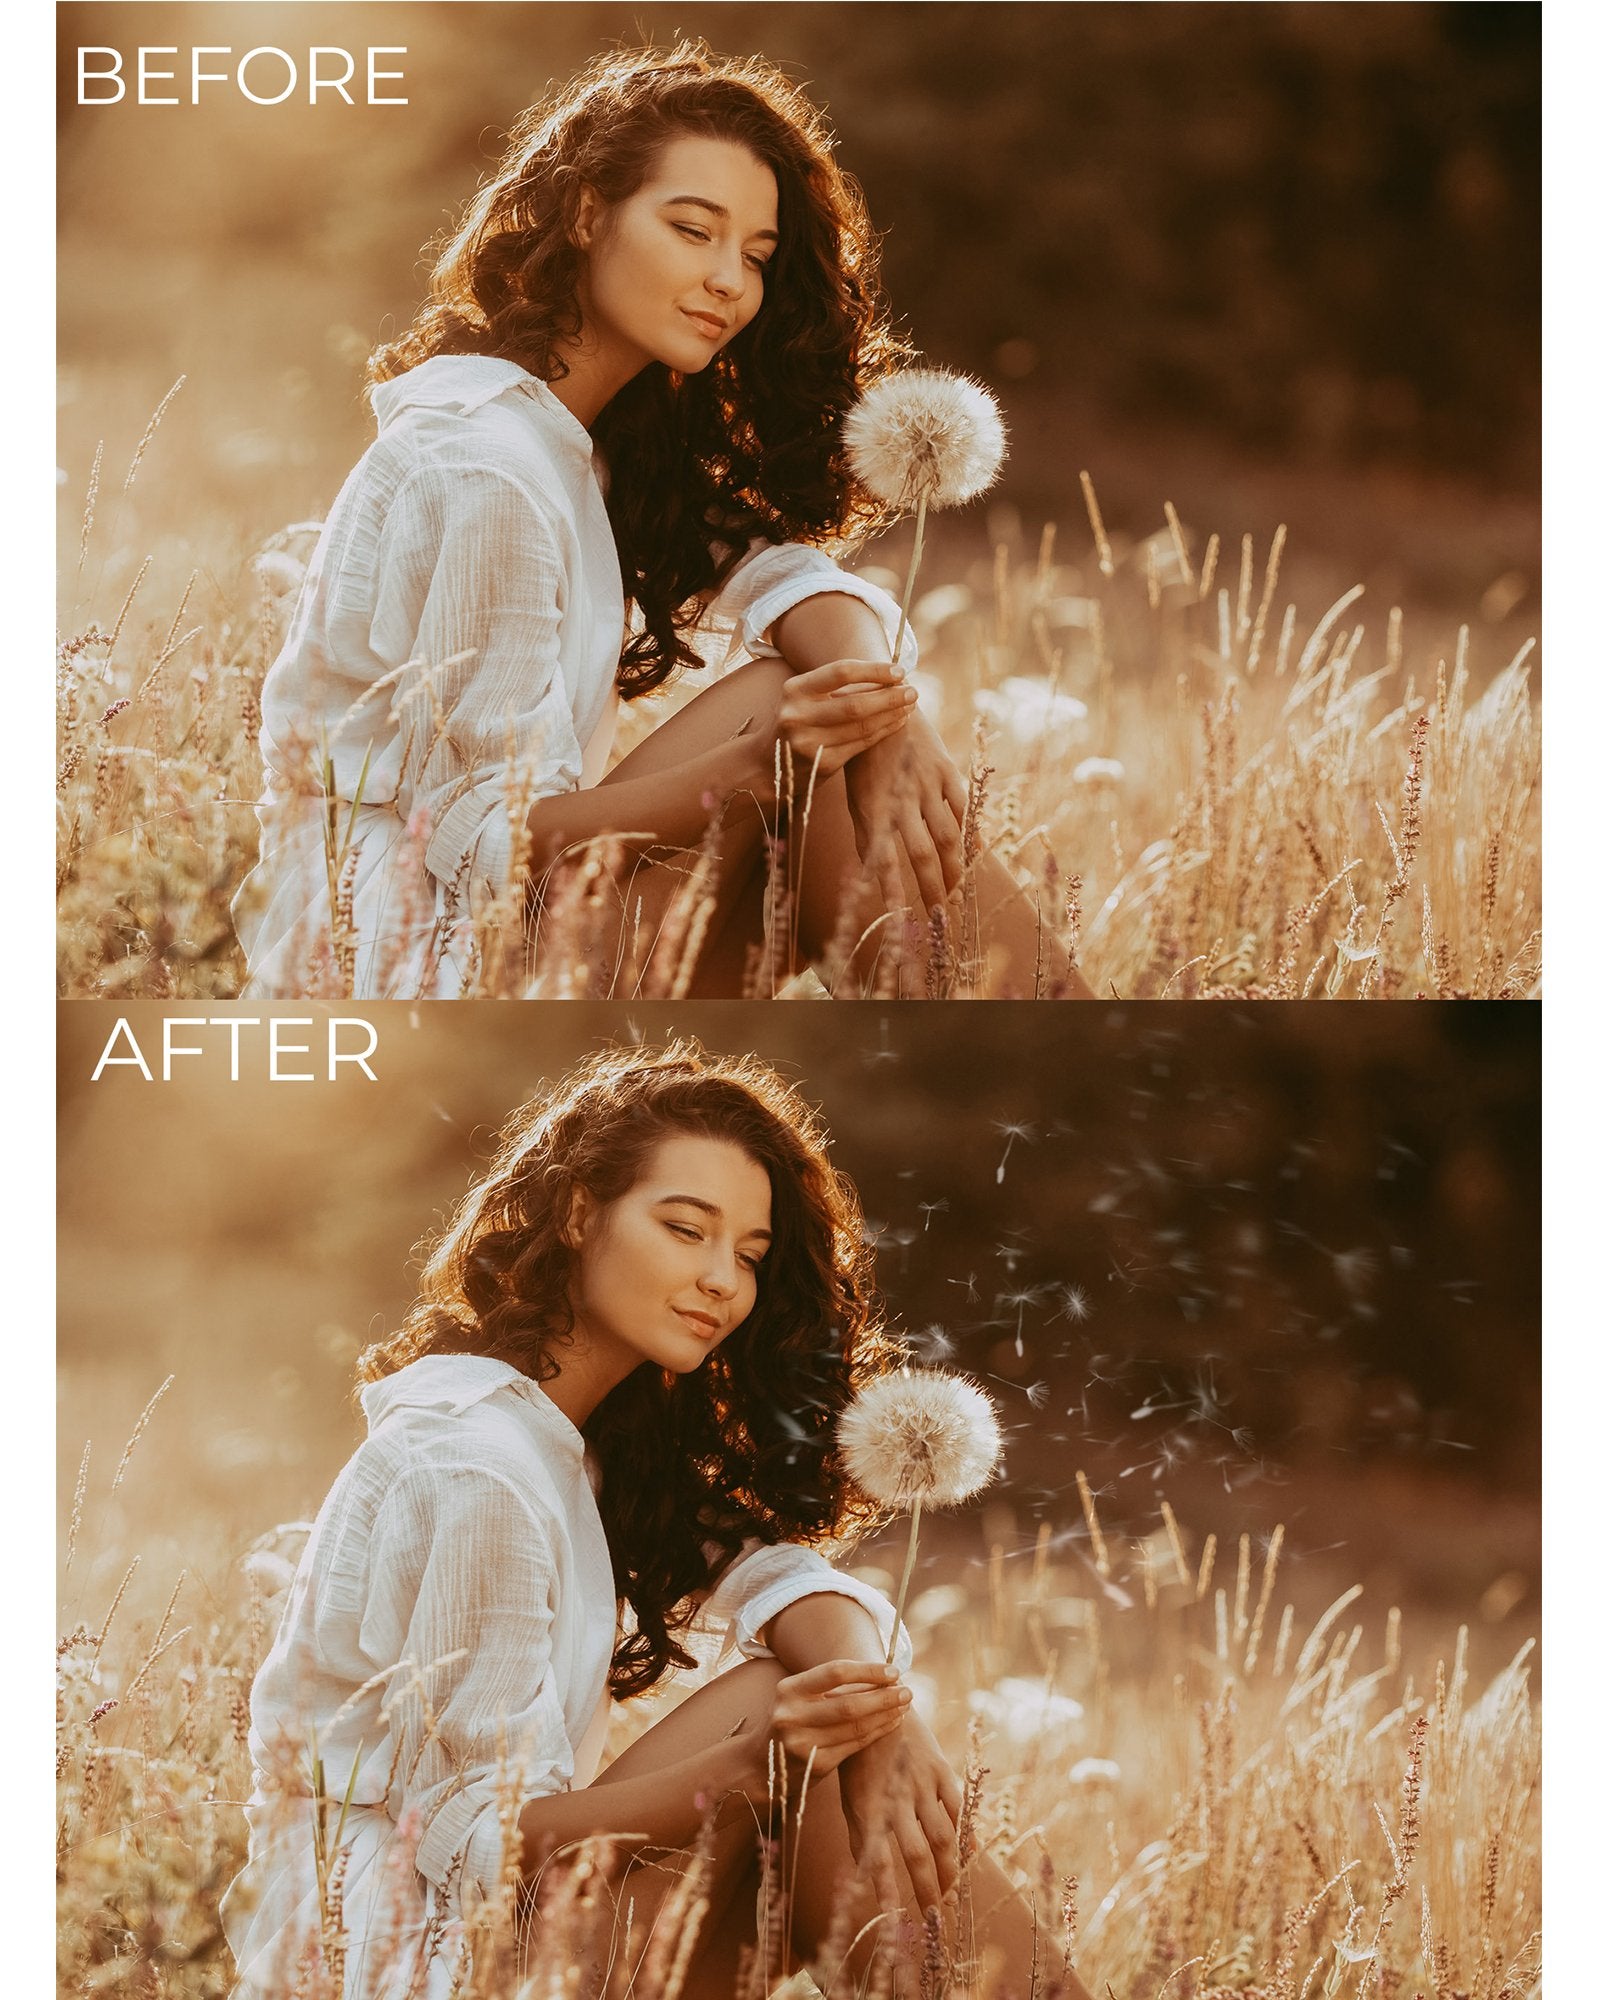 Dandelion Photo Overlays & Digital Backgrounds - Photoshop Overlays, Digital Backgrounds and Lightroom Presets